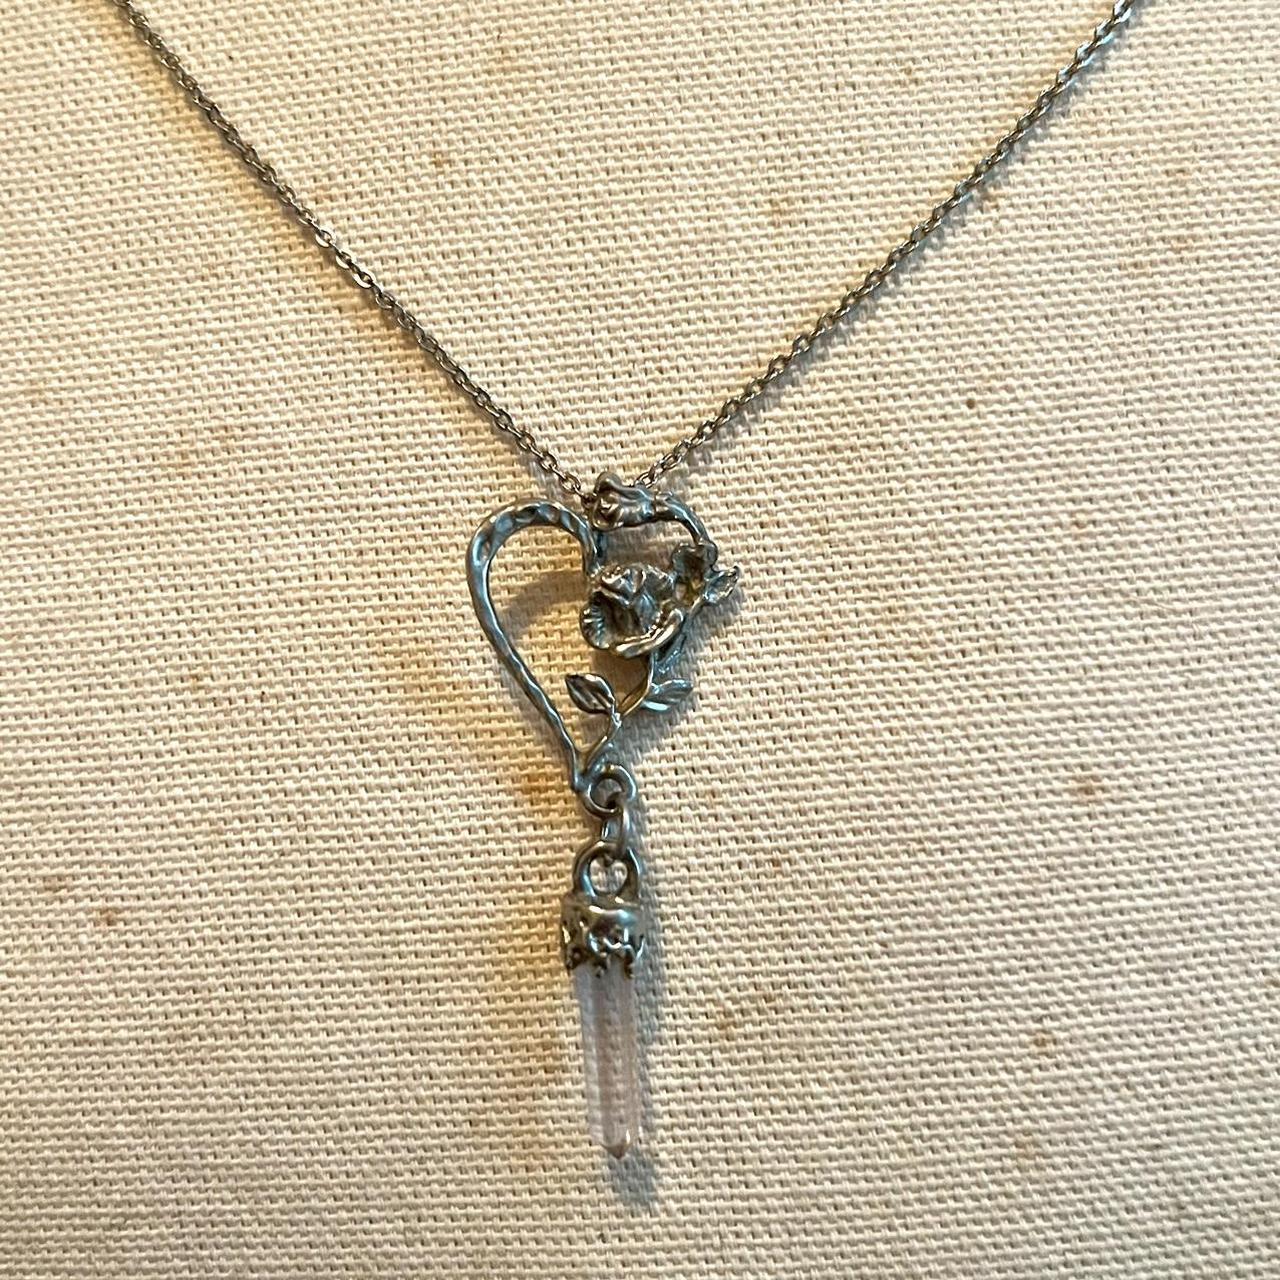 Vintage Heart + Flower Locket Necklace